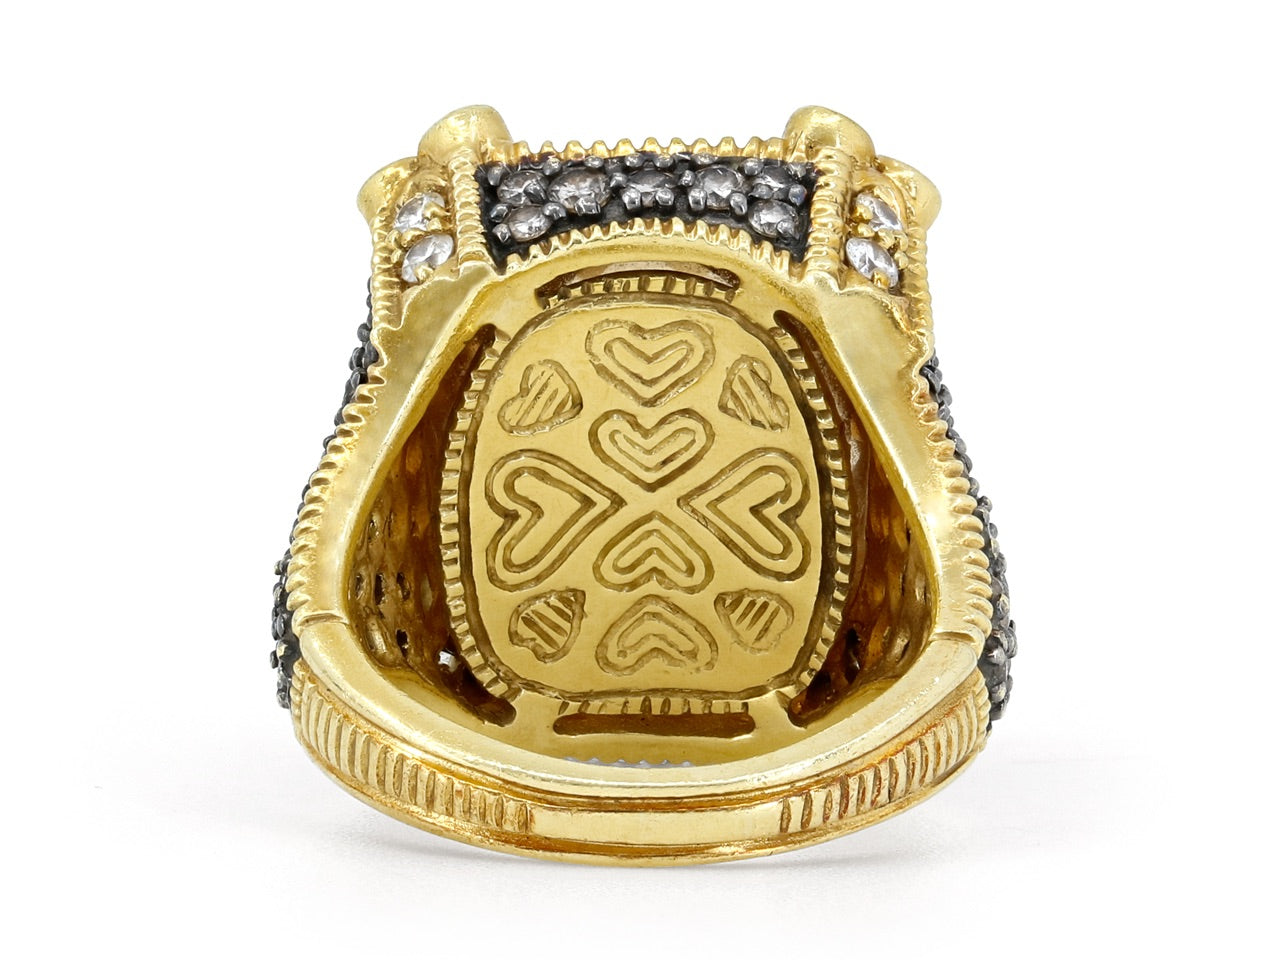 Judith Ripka 'Monaco' Diamond and Citrine Ring in 18K